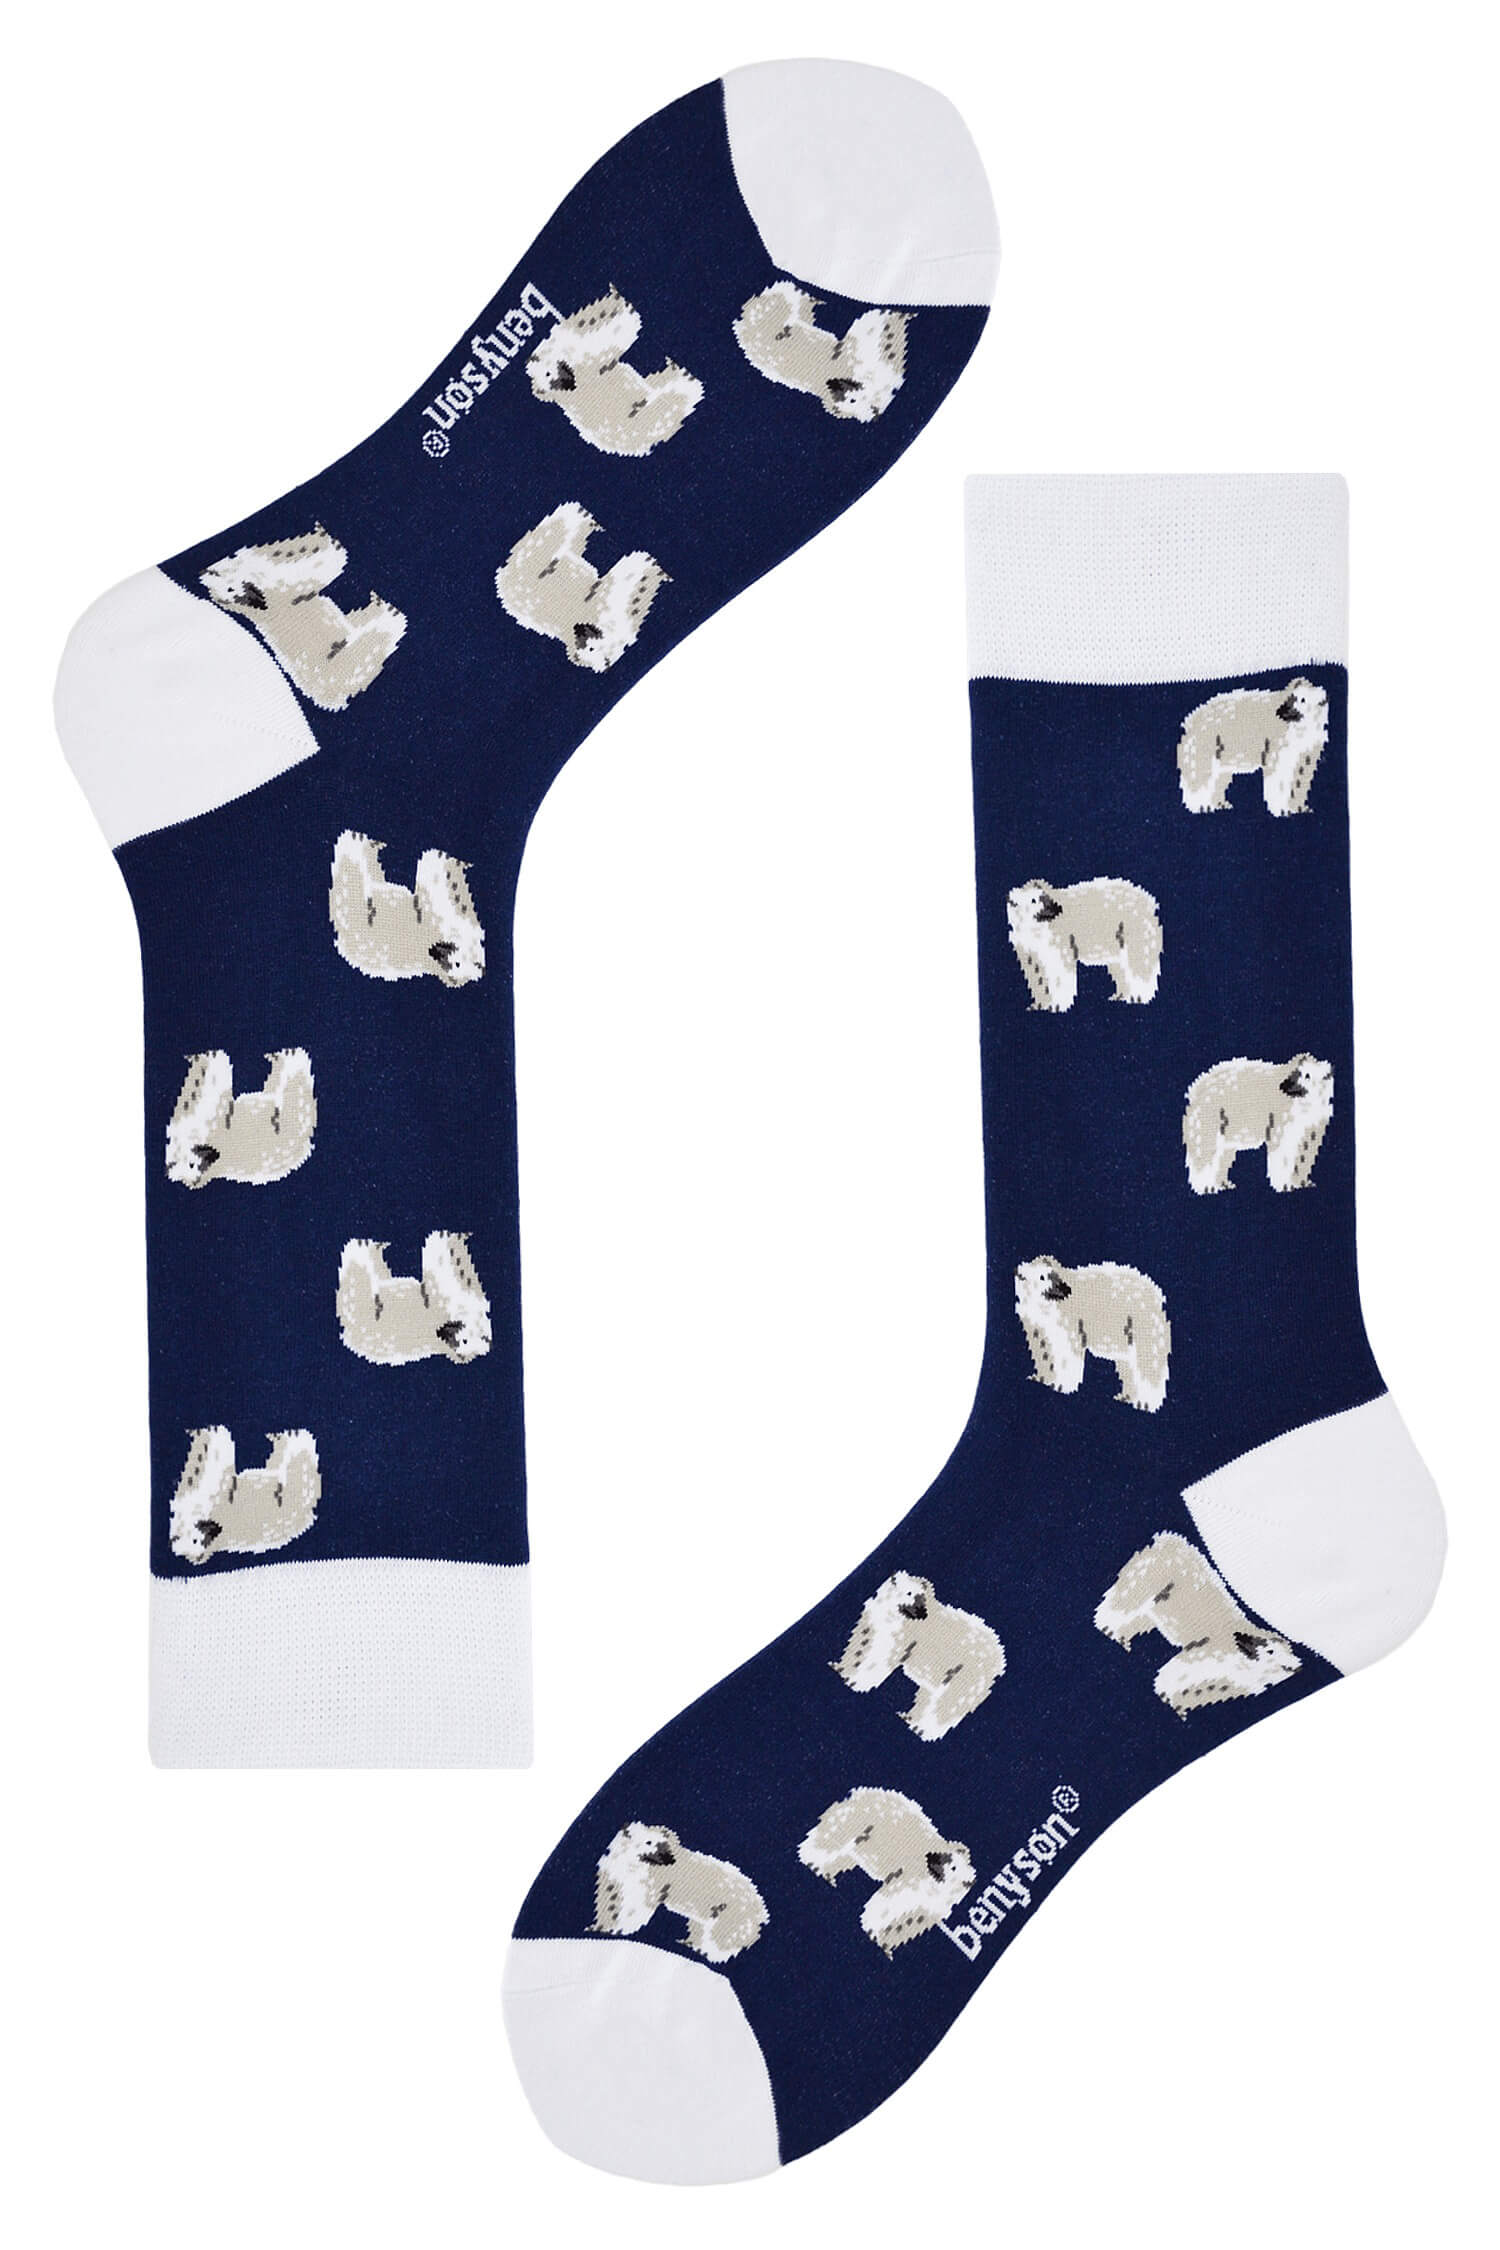 Polar bear veselé ponožky vysoké 042 42-46 tmavě modrá